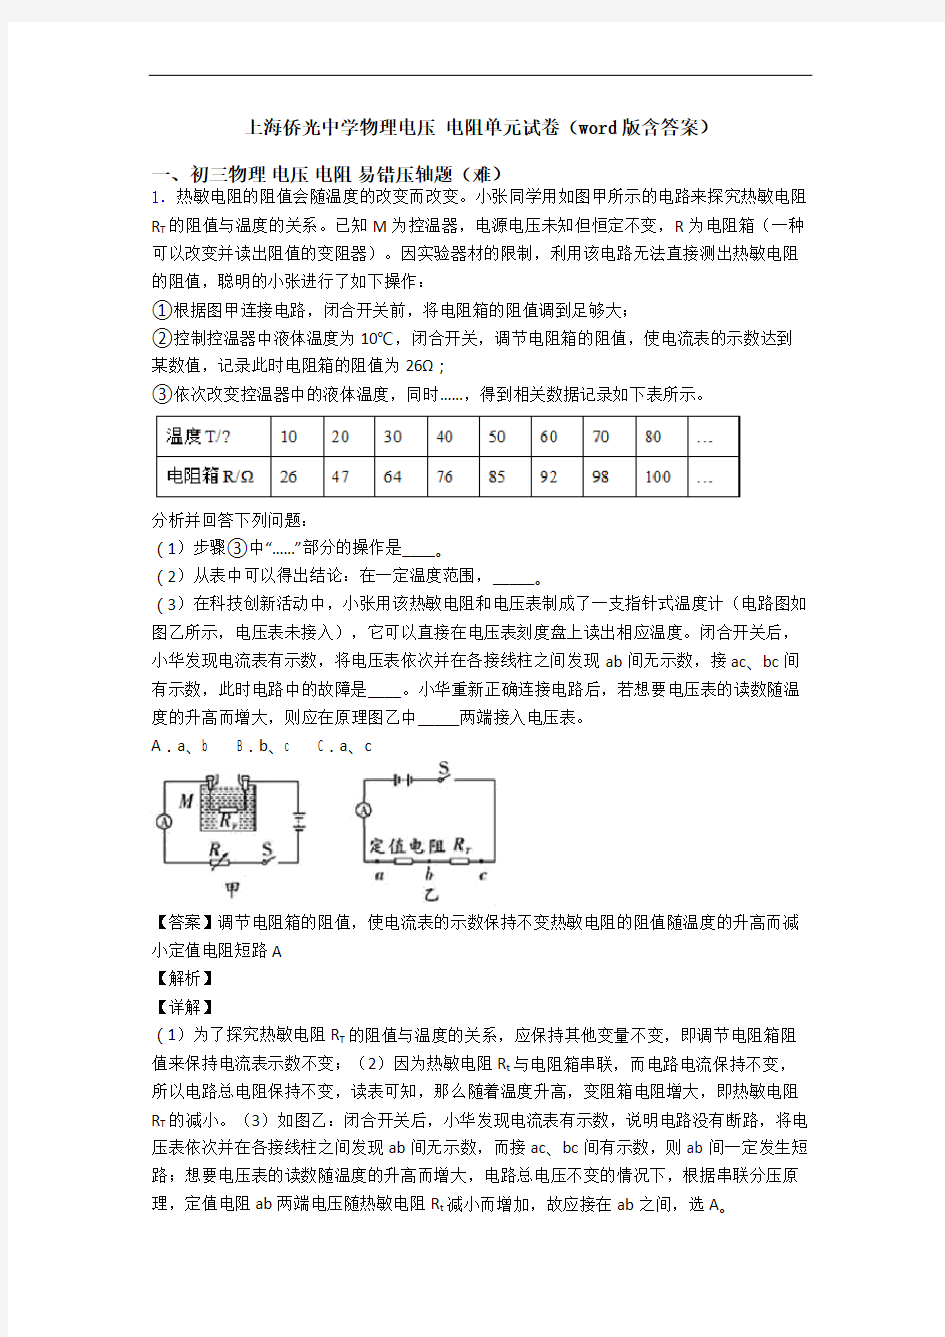 上海侨光中学物理电压 电阻单元试卷(word版含答案)